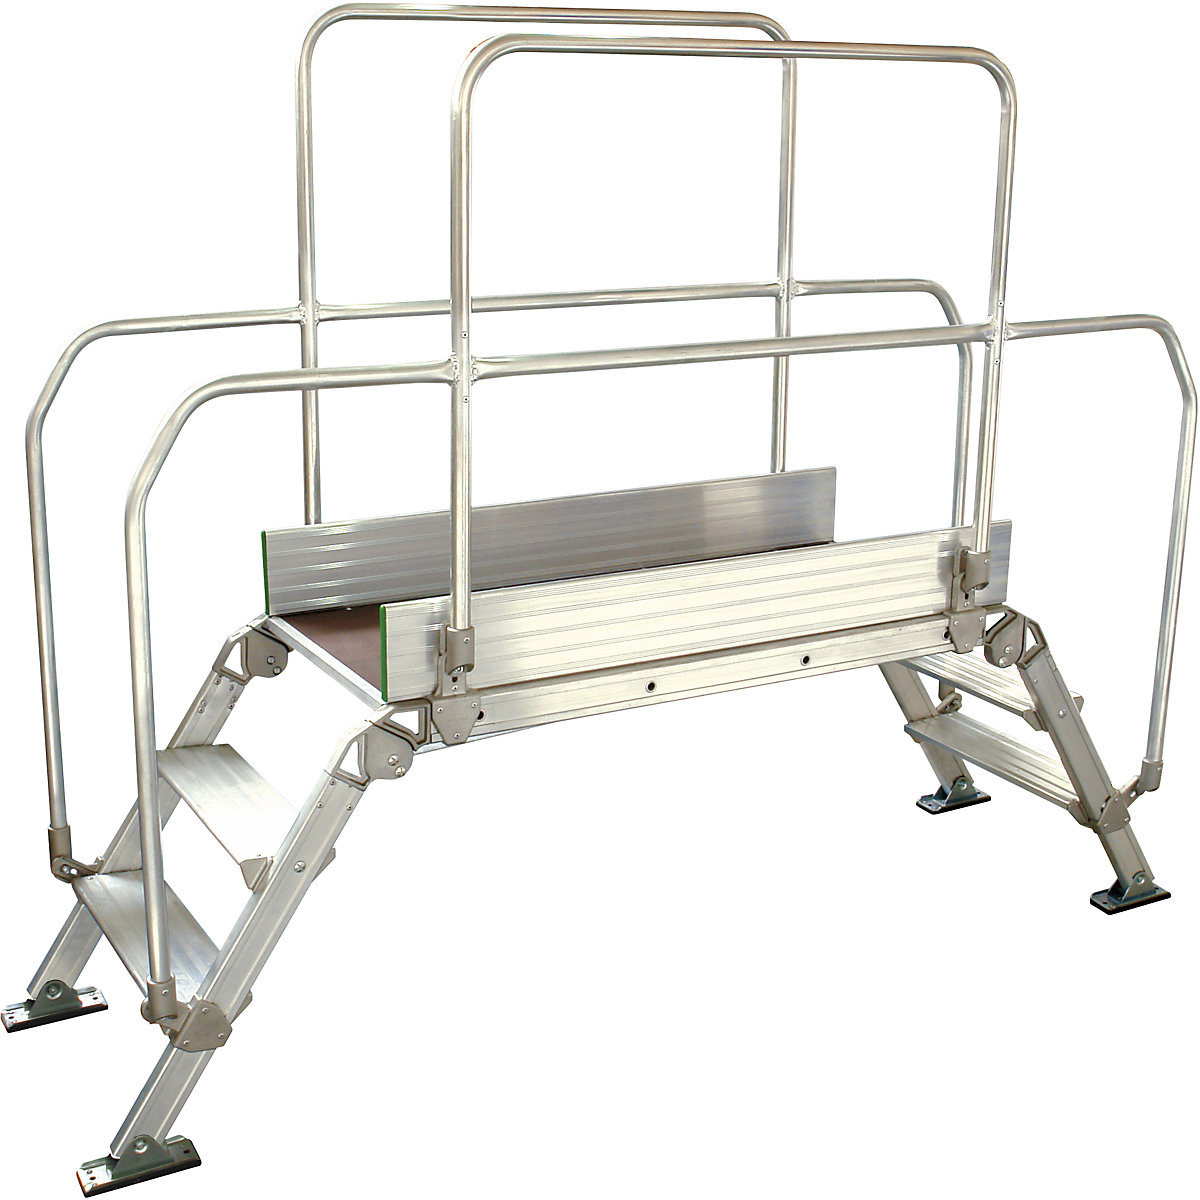 Alumínium áthidaló lépcső, teljes teherbírás 200 kg, 3 lépcsőfok, dobogó 1200 x 530 mm-16